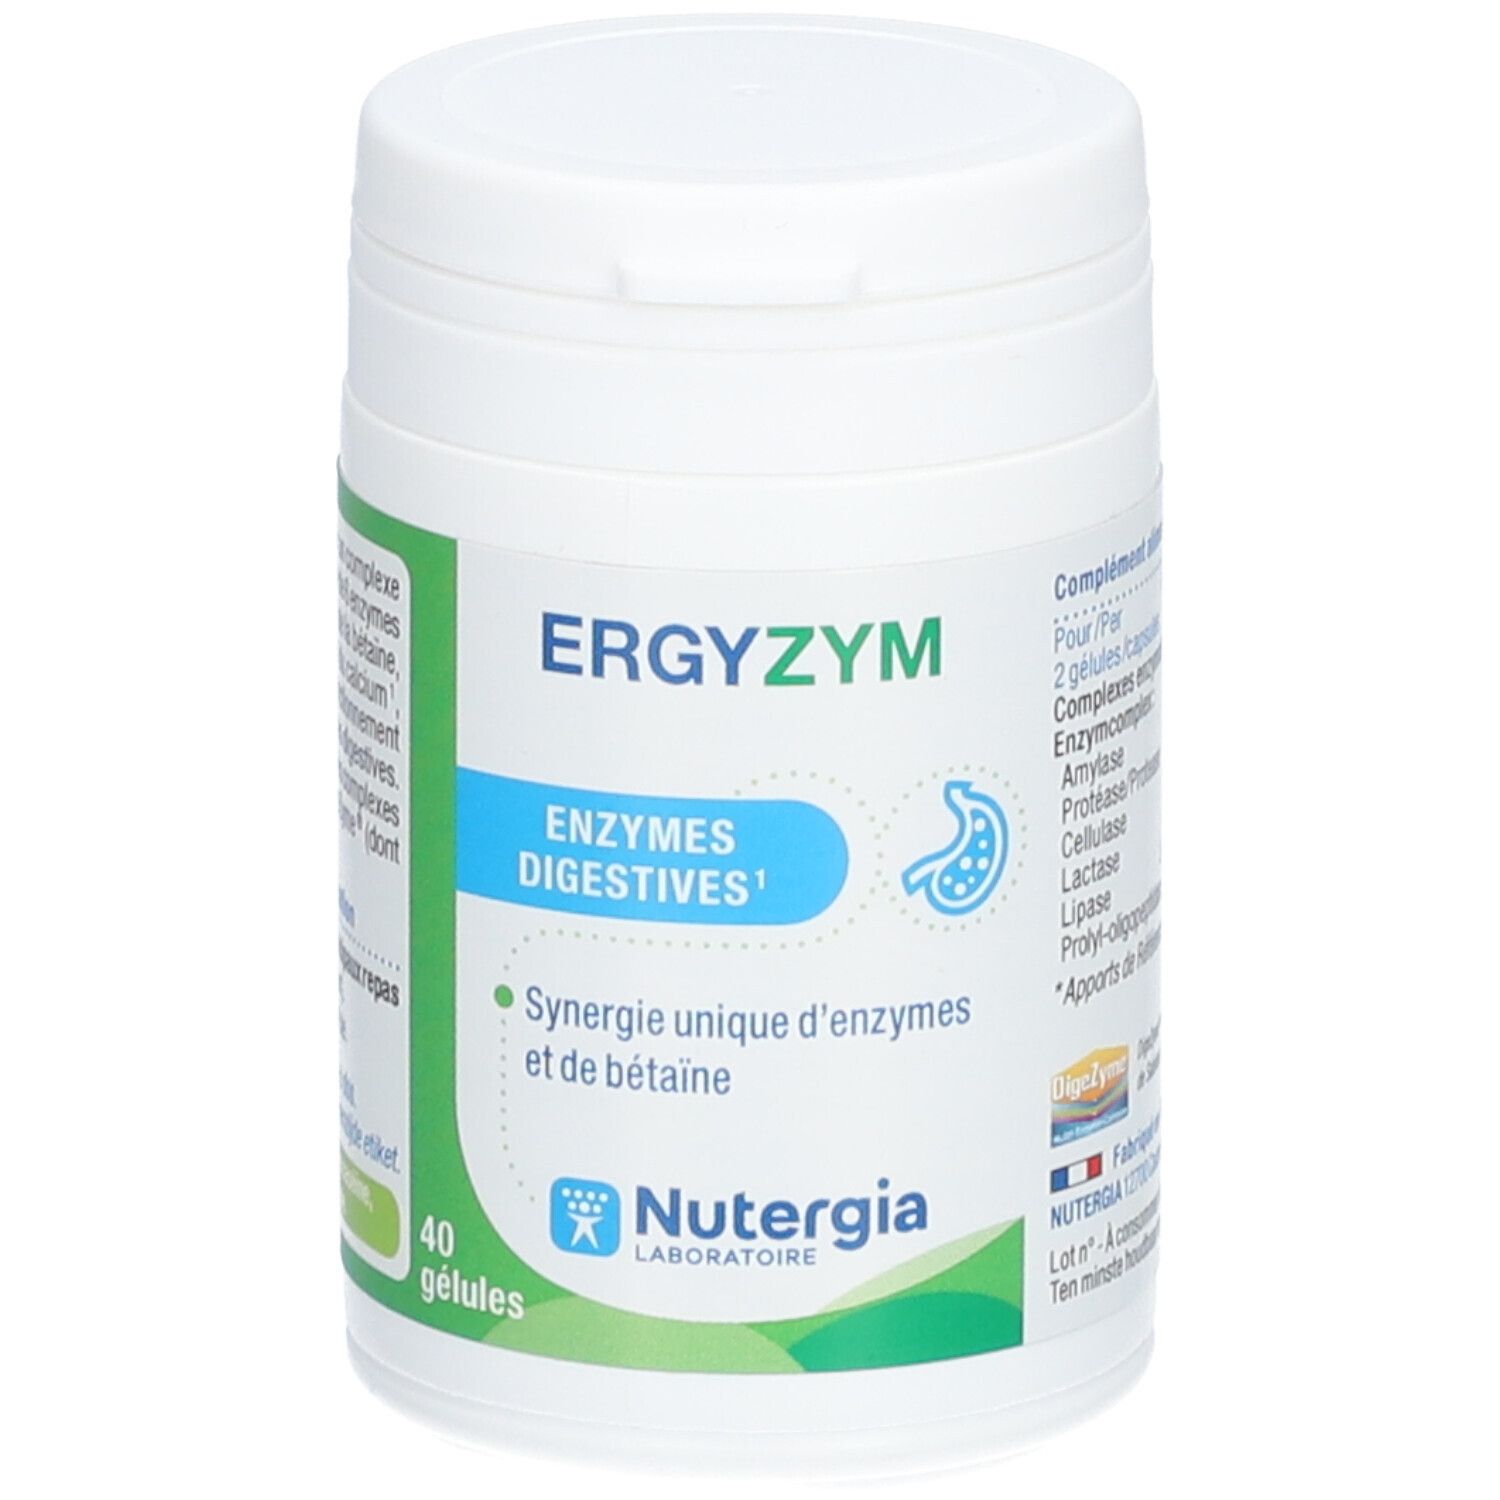 Image of Ergyzym